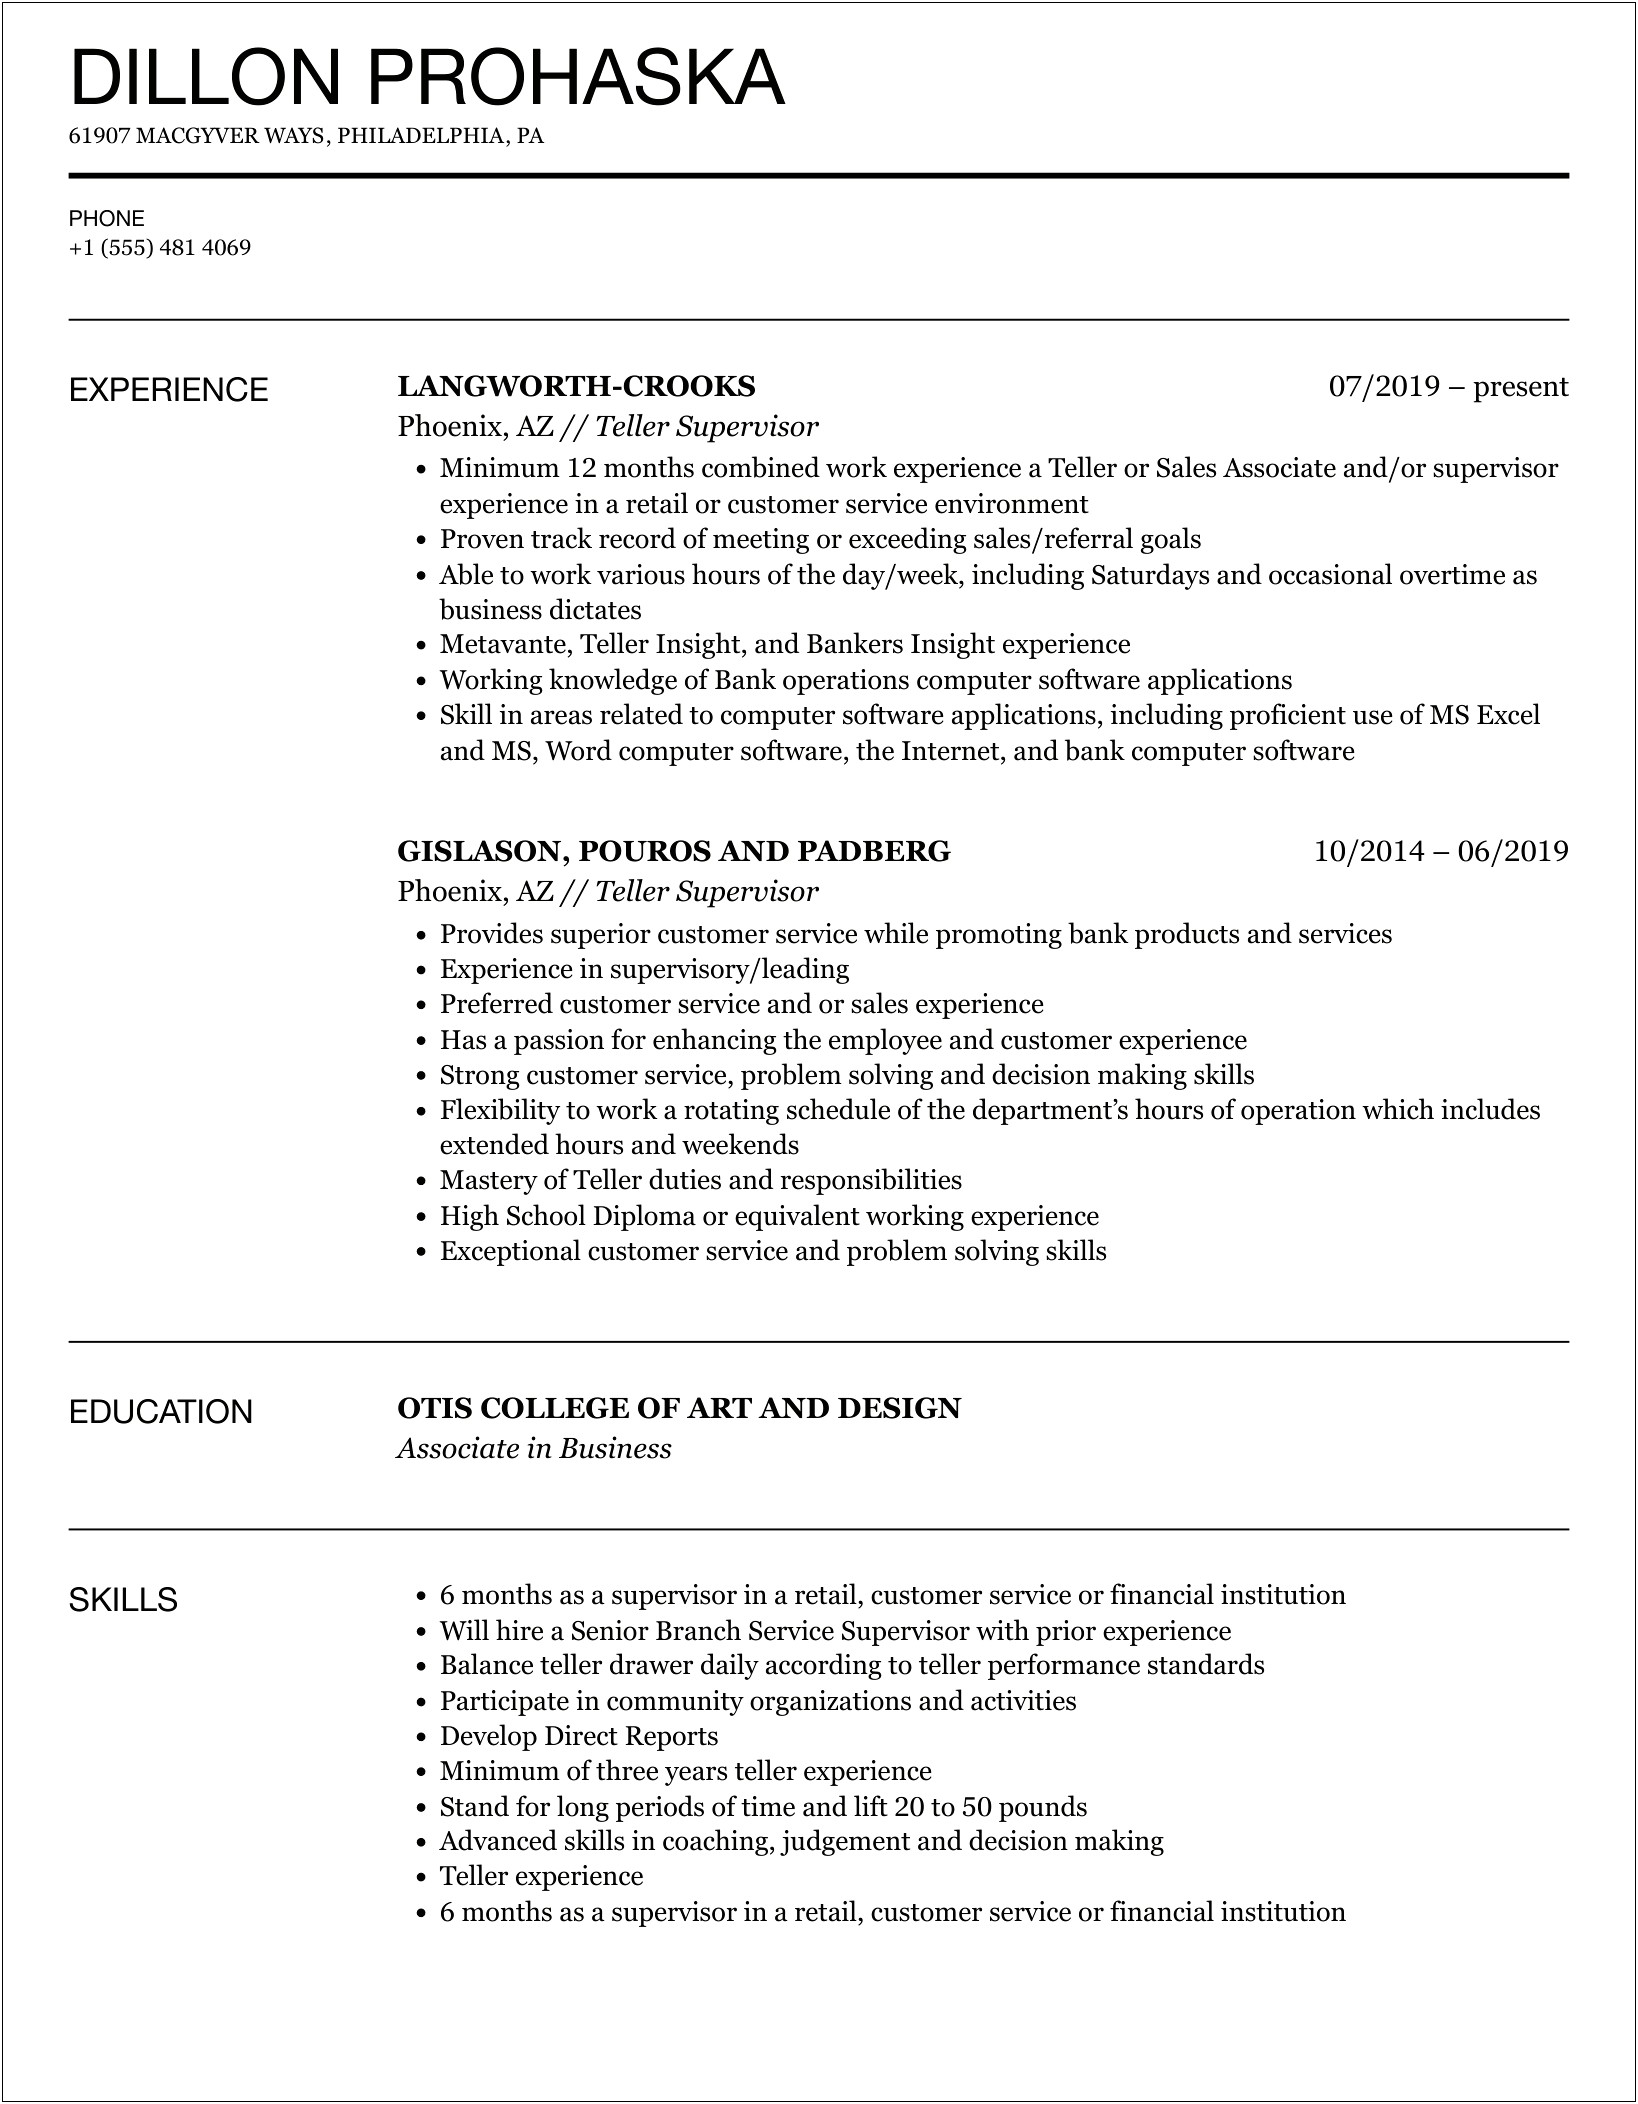 Resume Objective Examples For Teller Supervisor